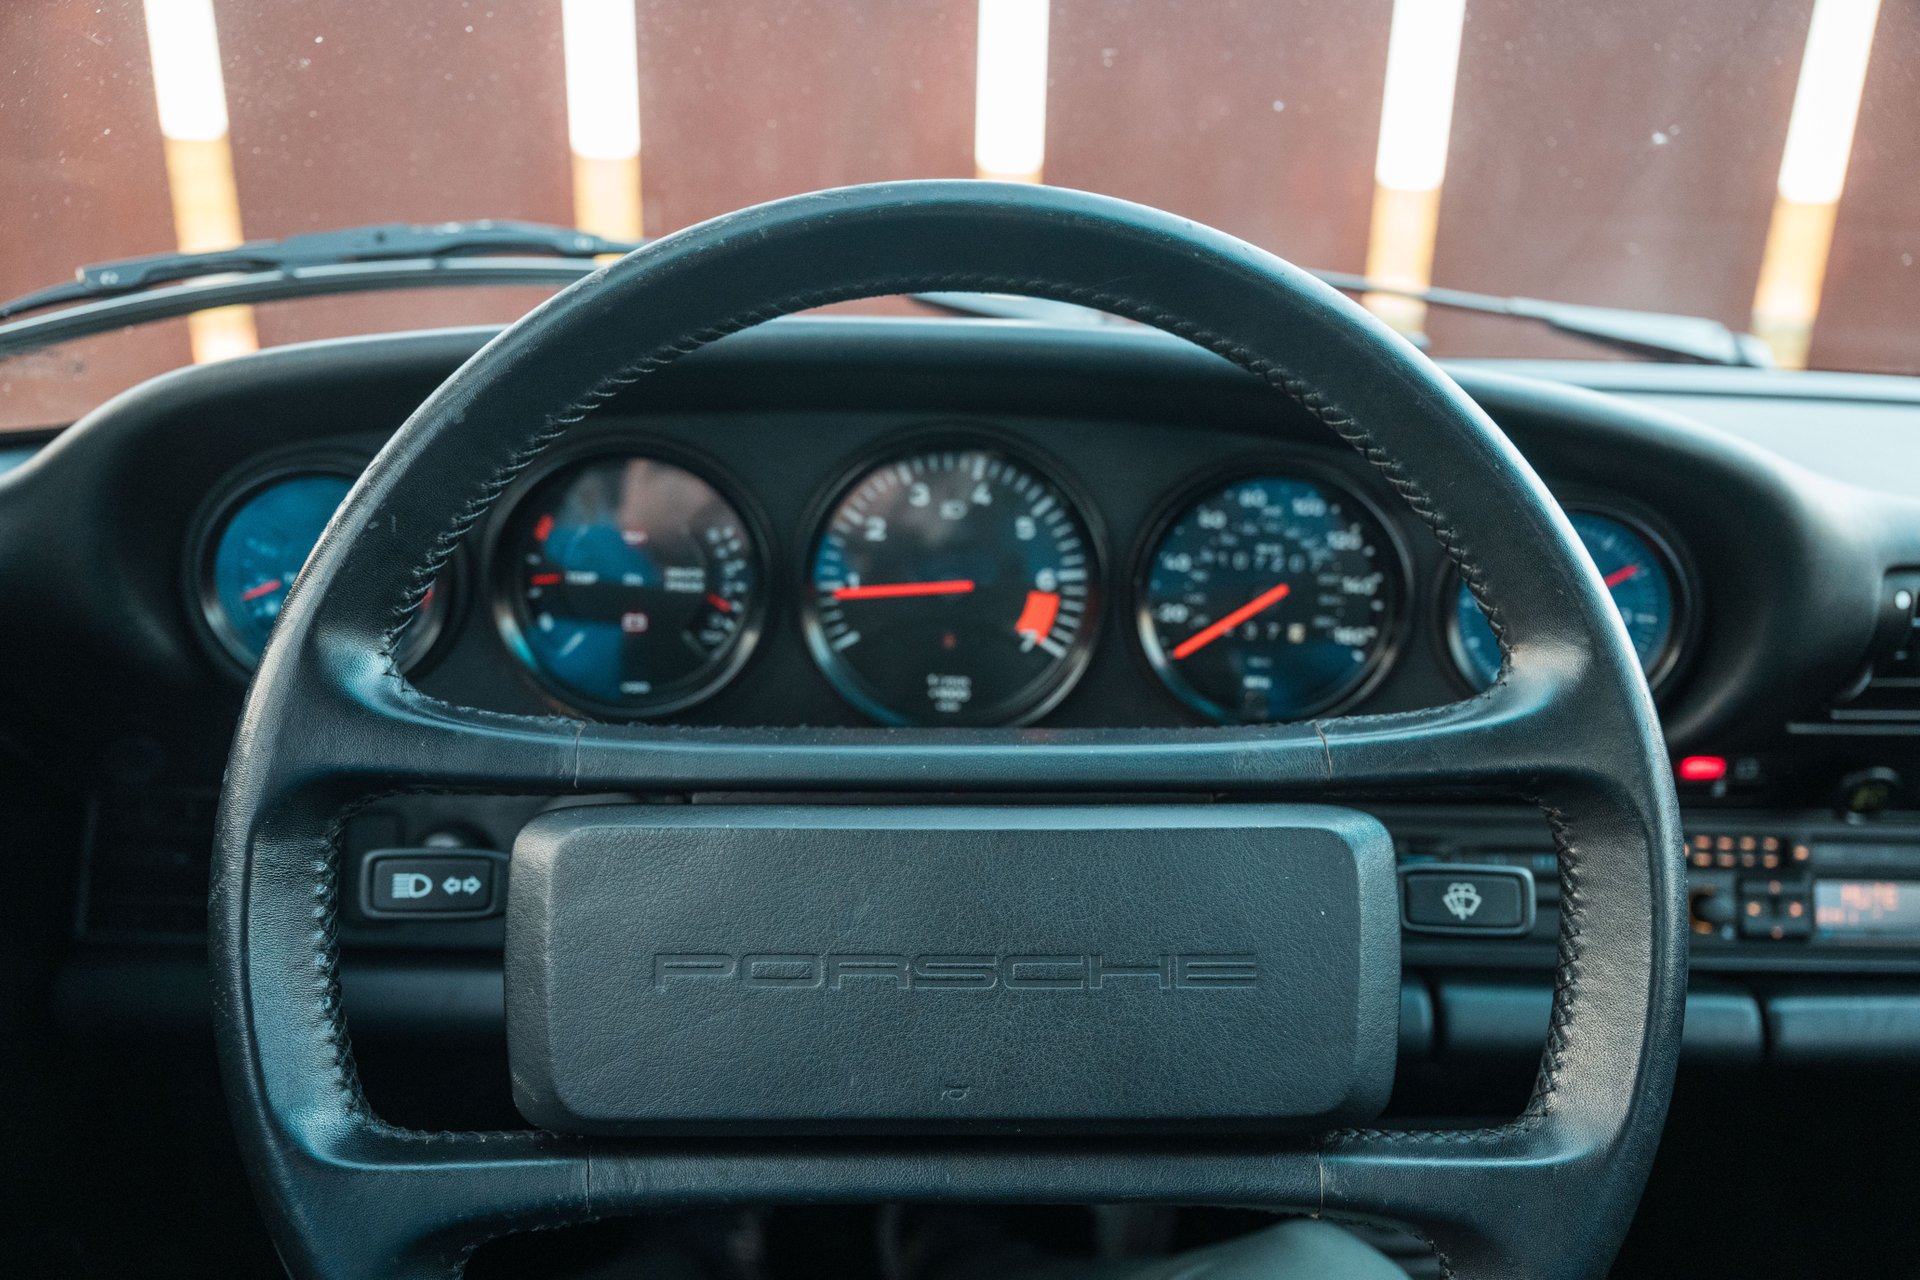 For Sale 1989 Porsche 911 Carrera